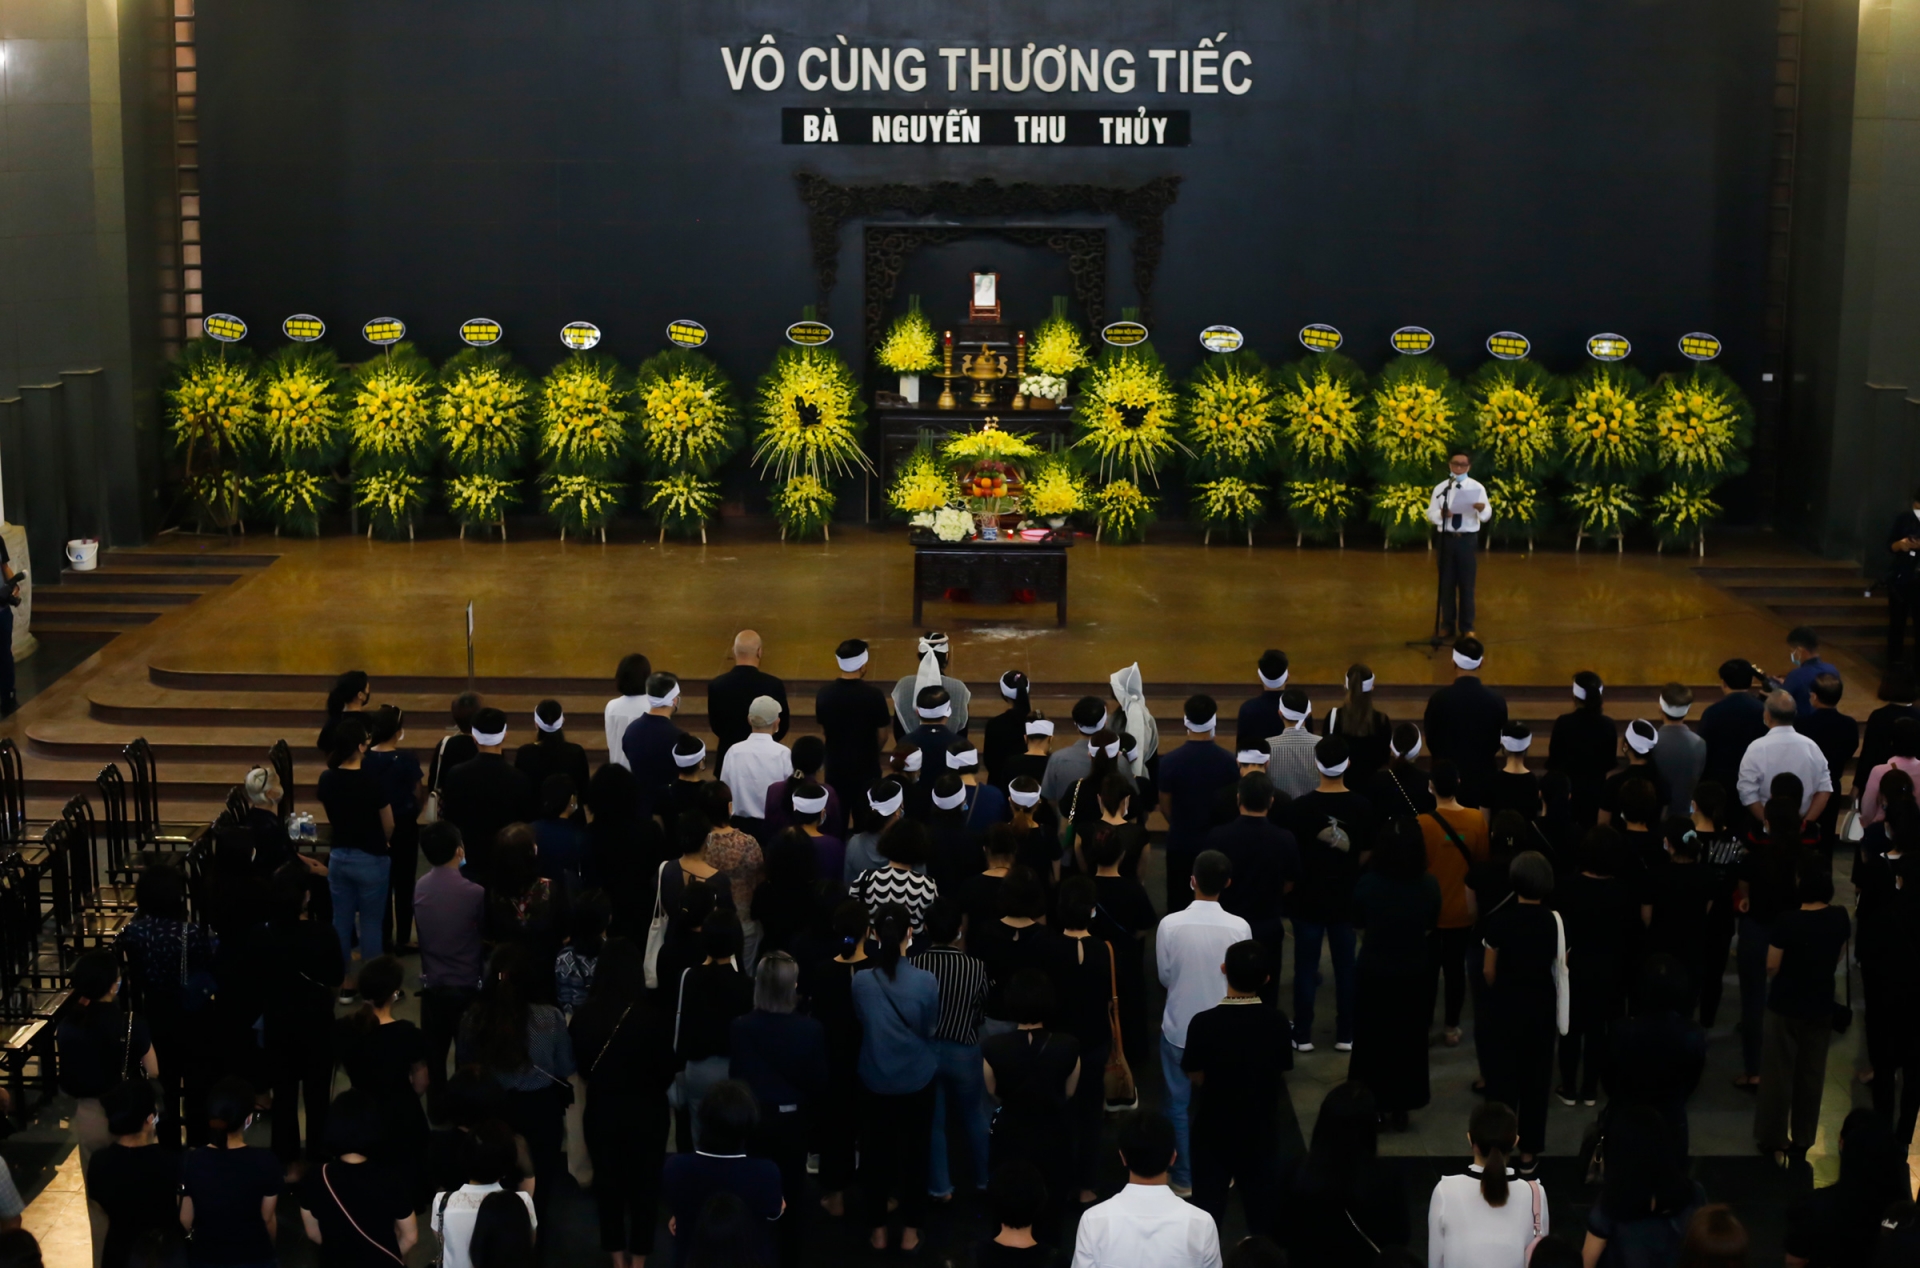 Toàn cảnh đám tang của Hoa hậu Thu Thủy được diễn ra vào 8/6 vừa qua